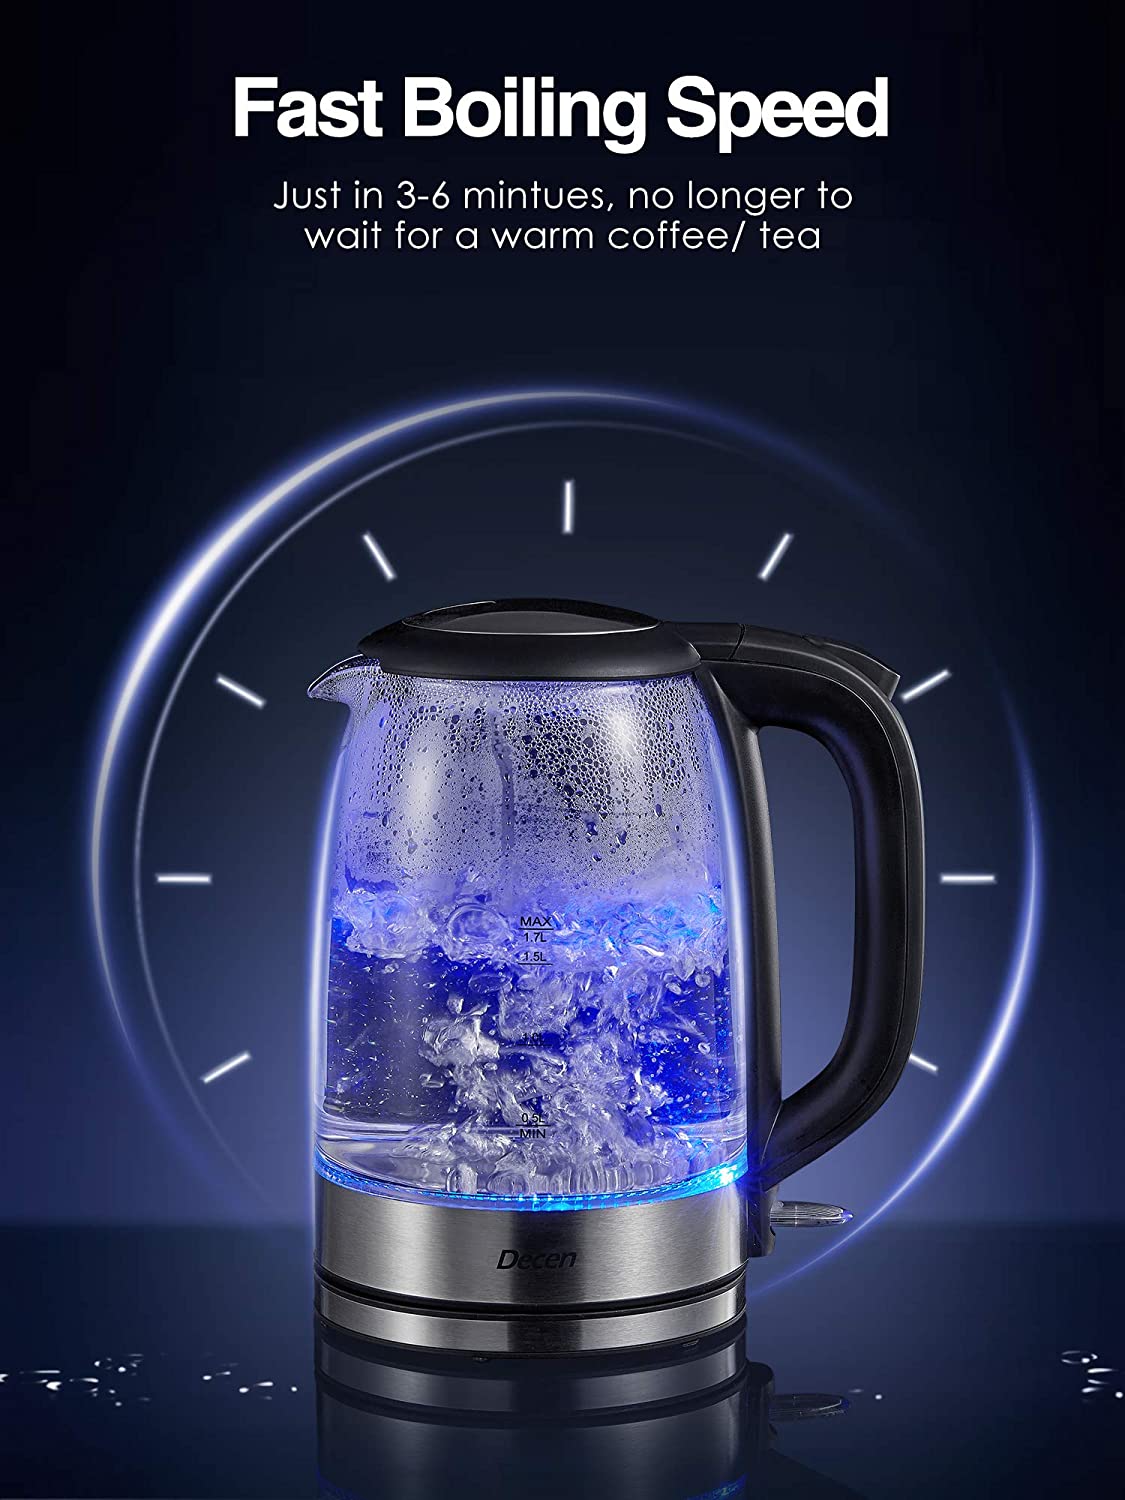 Speed-boil Water Electric Kettle, 1.7l 1500w, Coffee & Tea Kettle